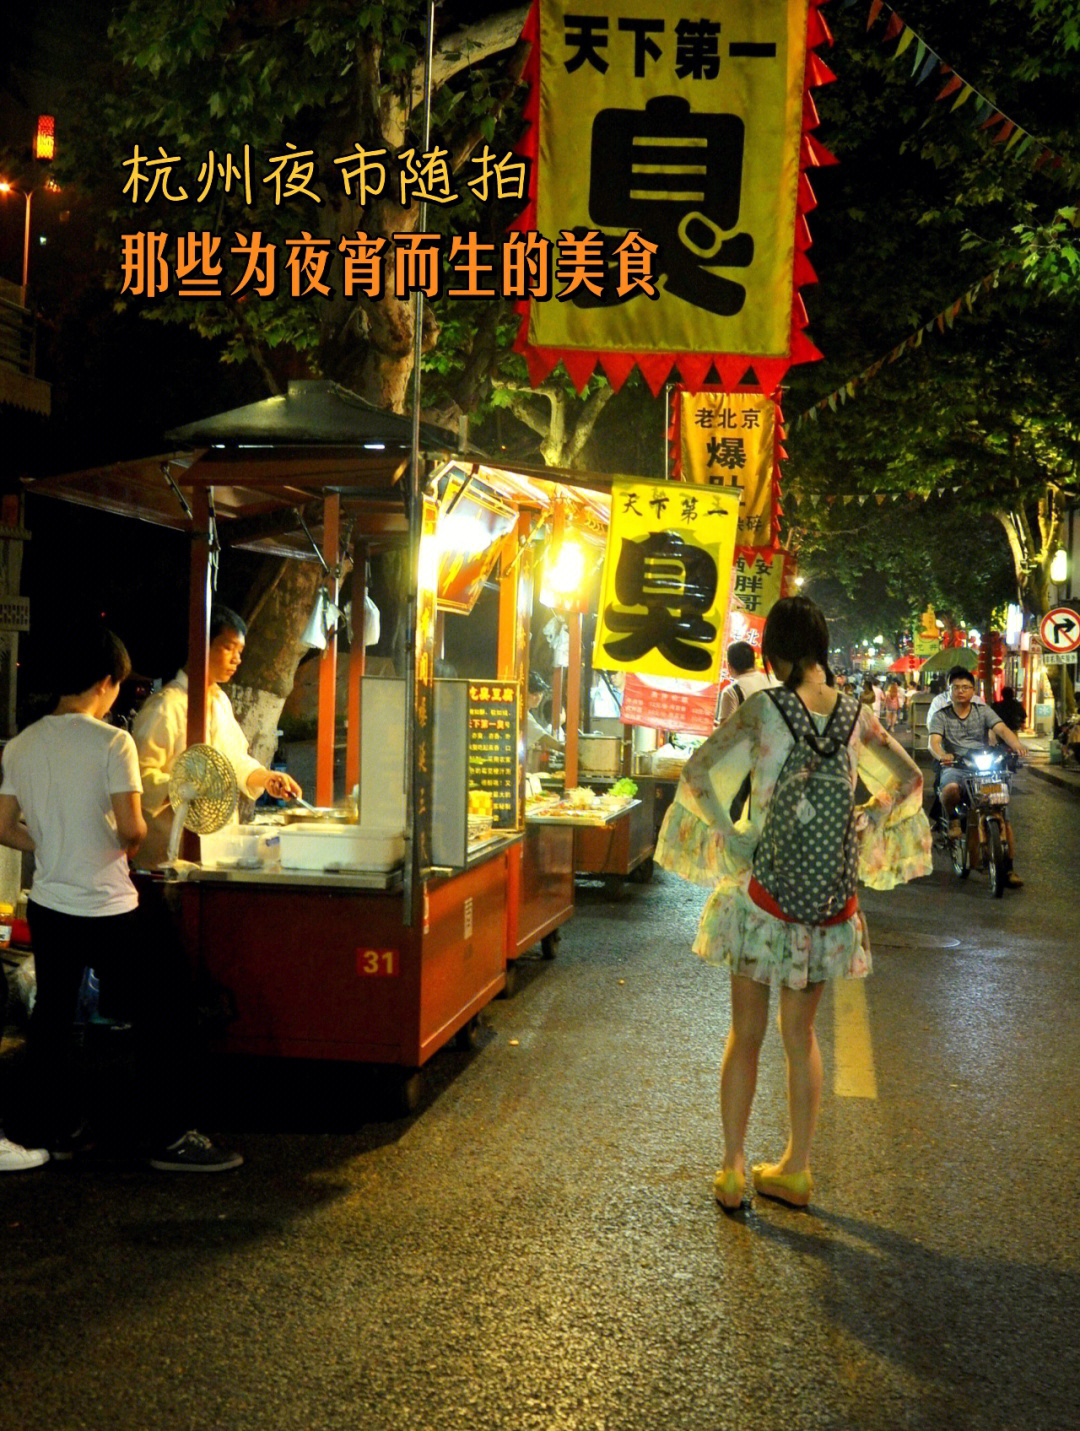 拍摄地点:杭州河坊街,吴山夜市